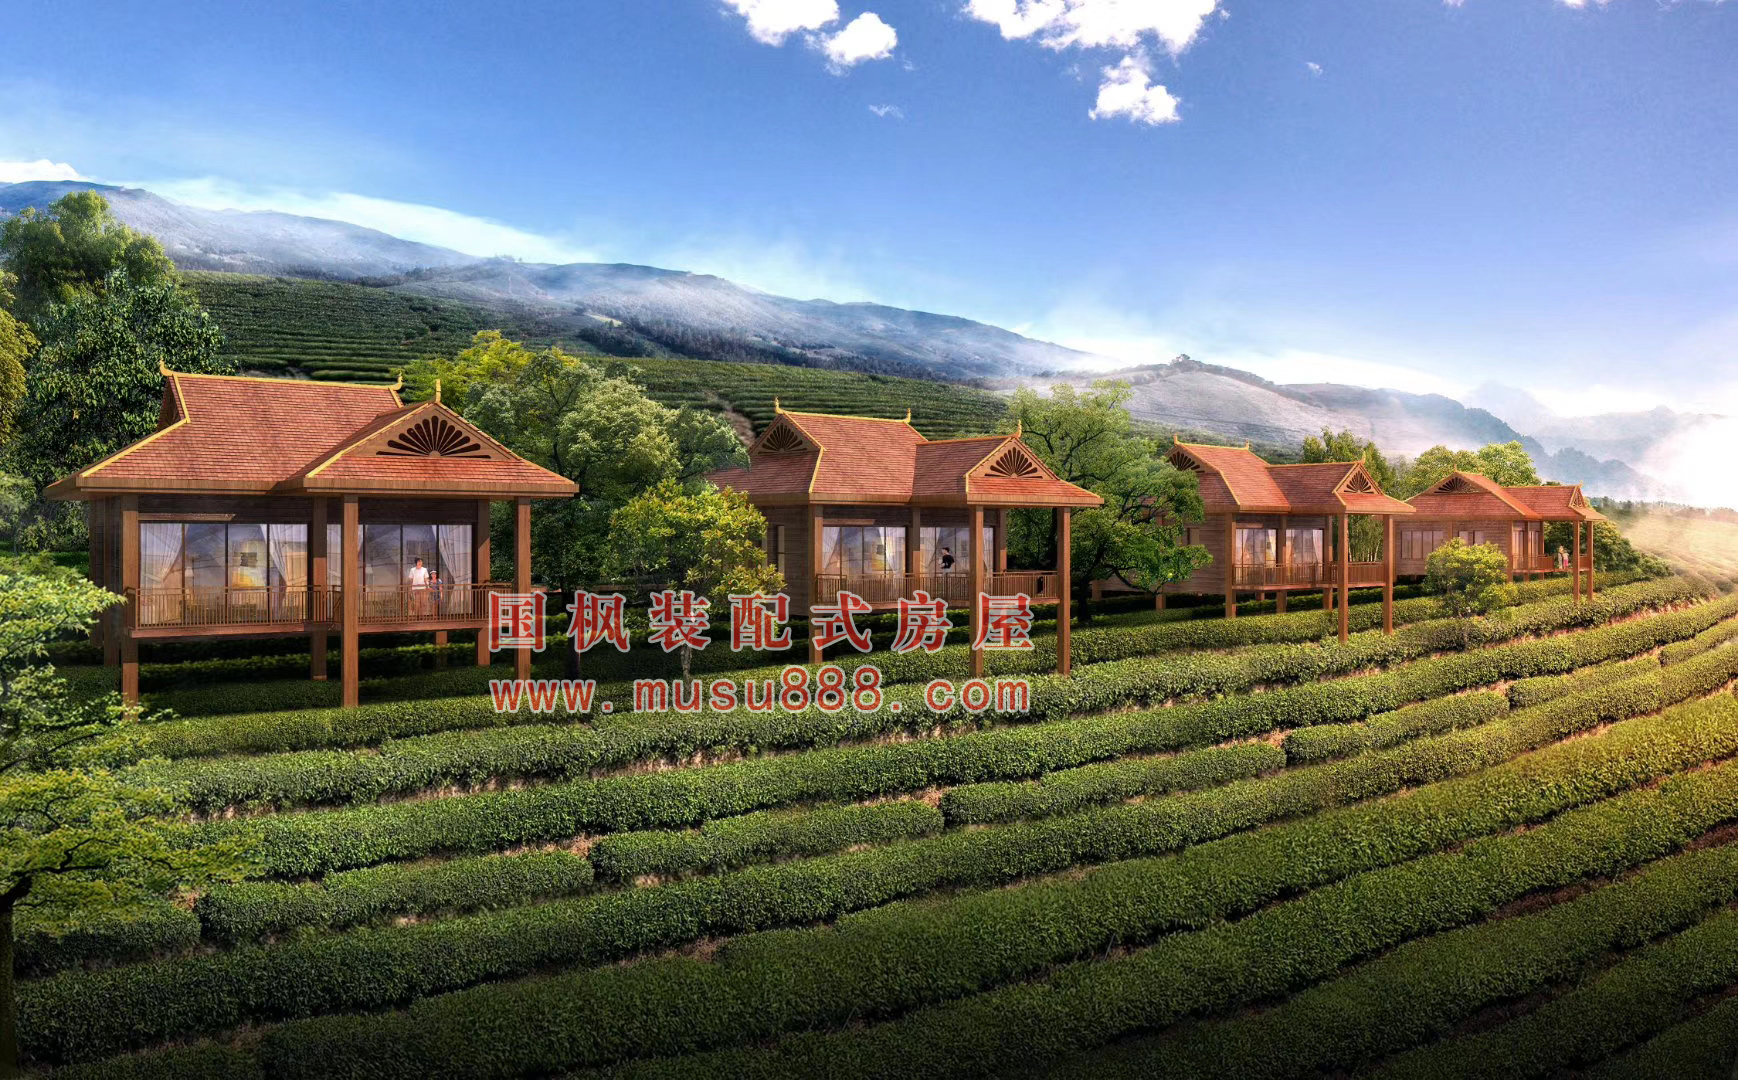 芜湖市绿色农房设计施工公司 多少钱一平方米